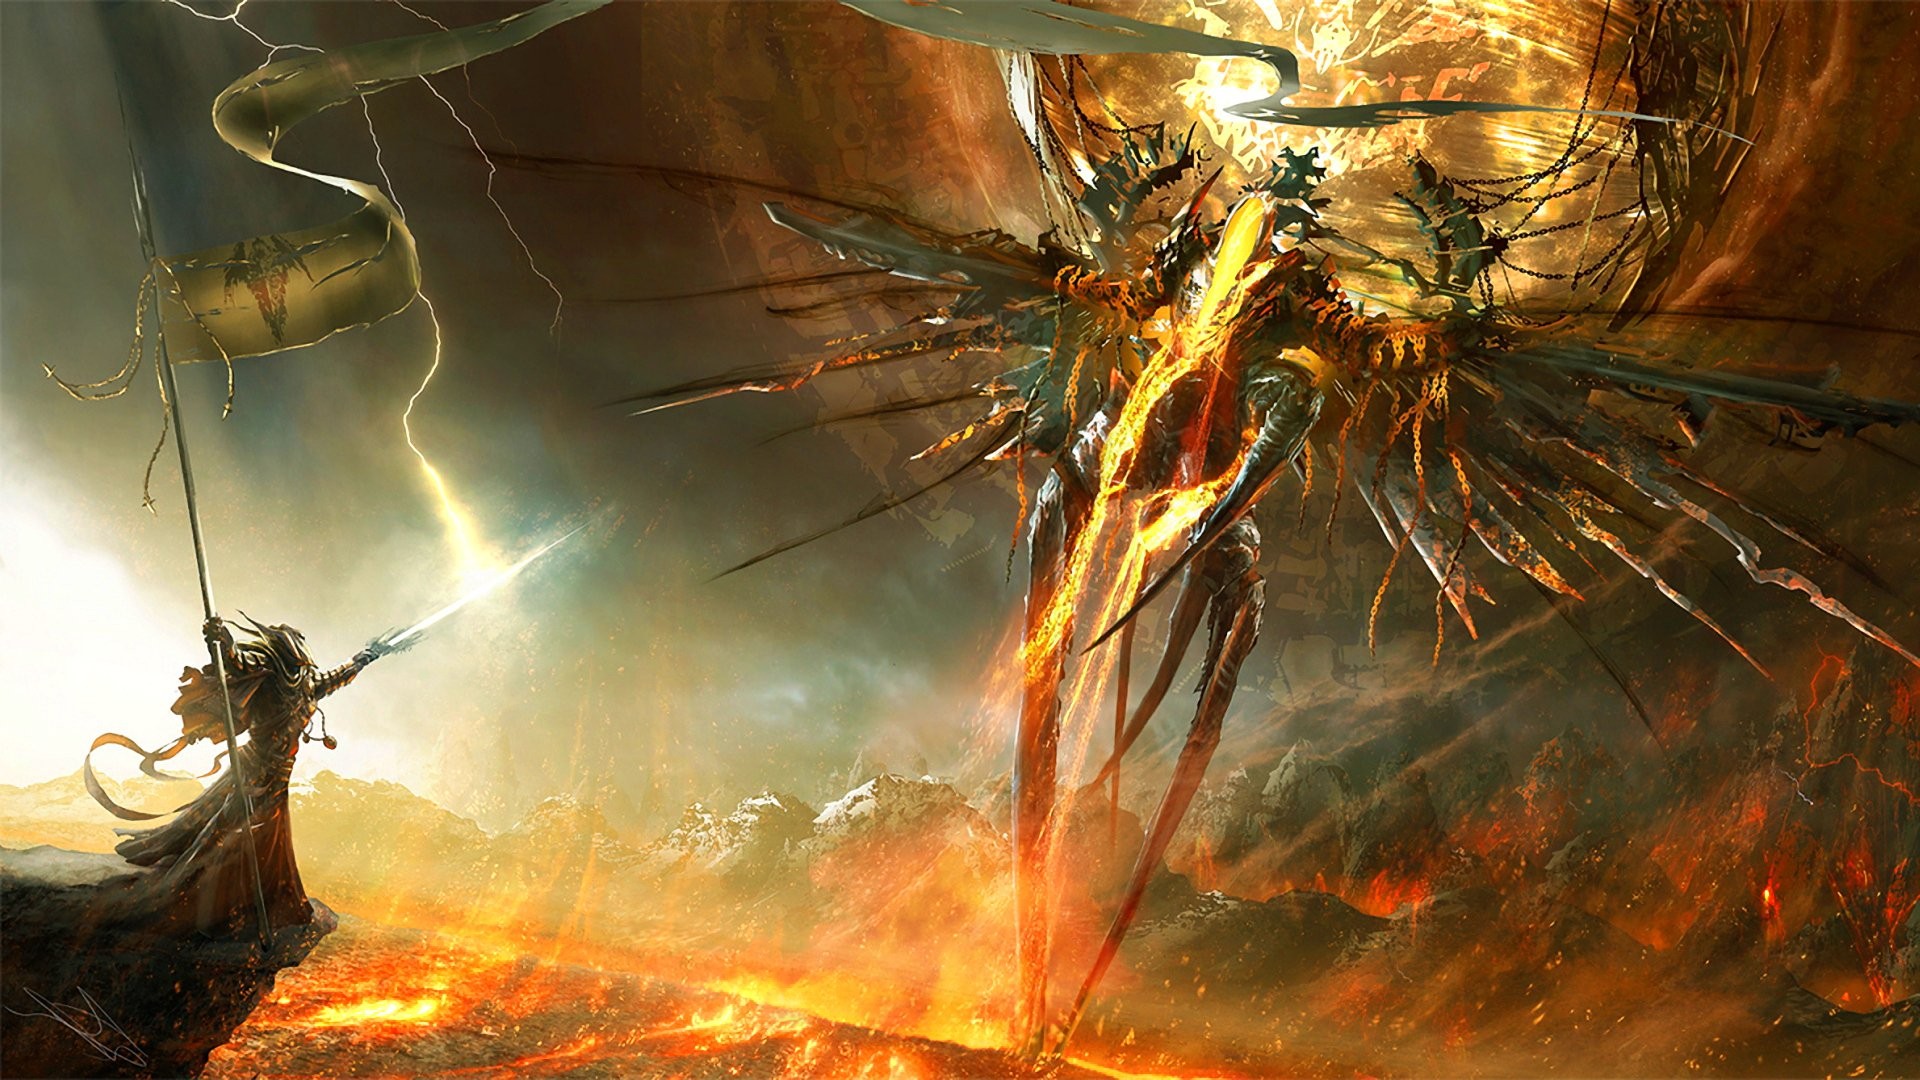 General 1920x1080 Diablo III angel demon fantasy art fan art fire Blizzard Entertainment video games PC gaming